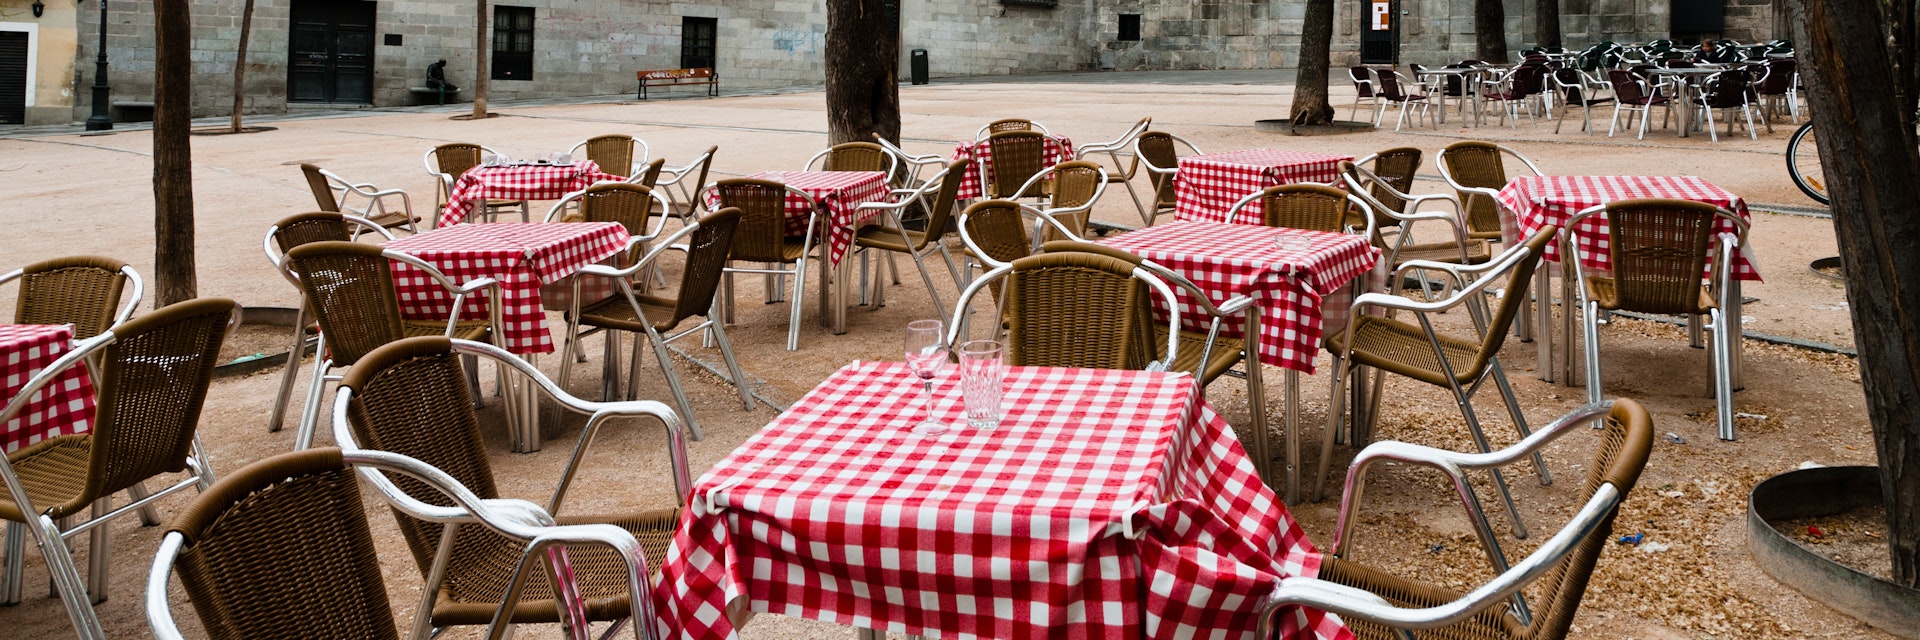 Restaurant tables in Plaza de la Paja, Madrid, Spain.